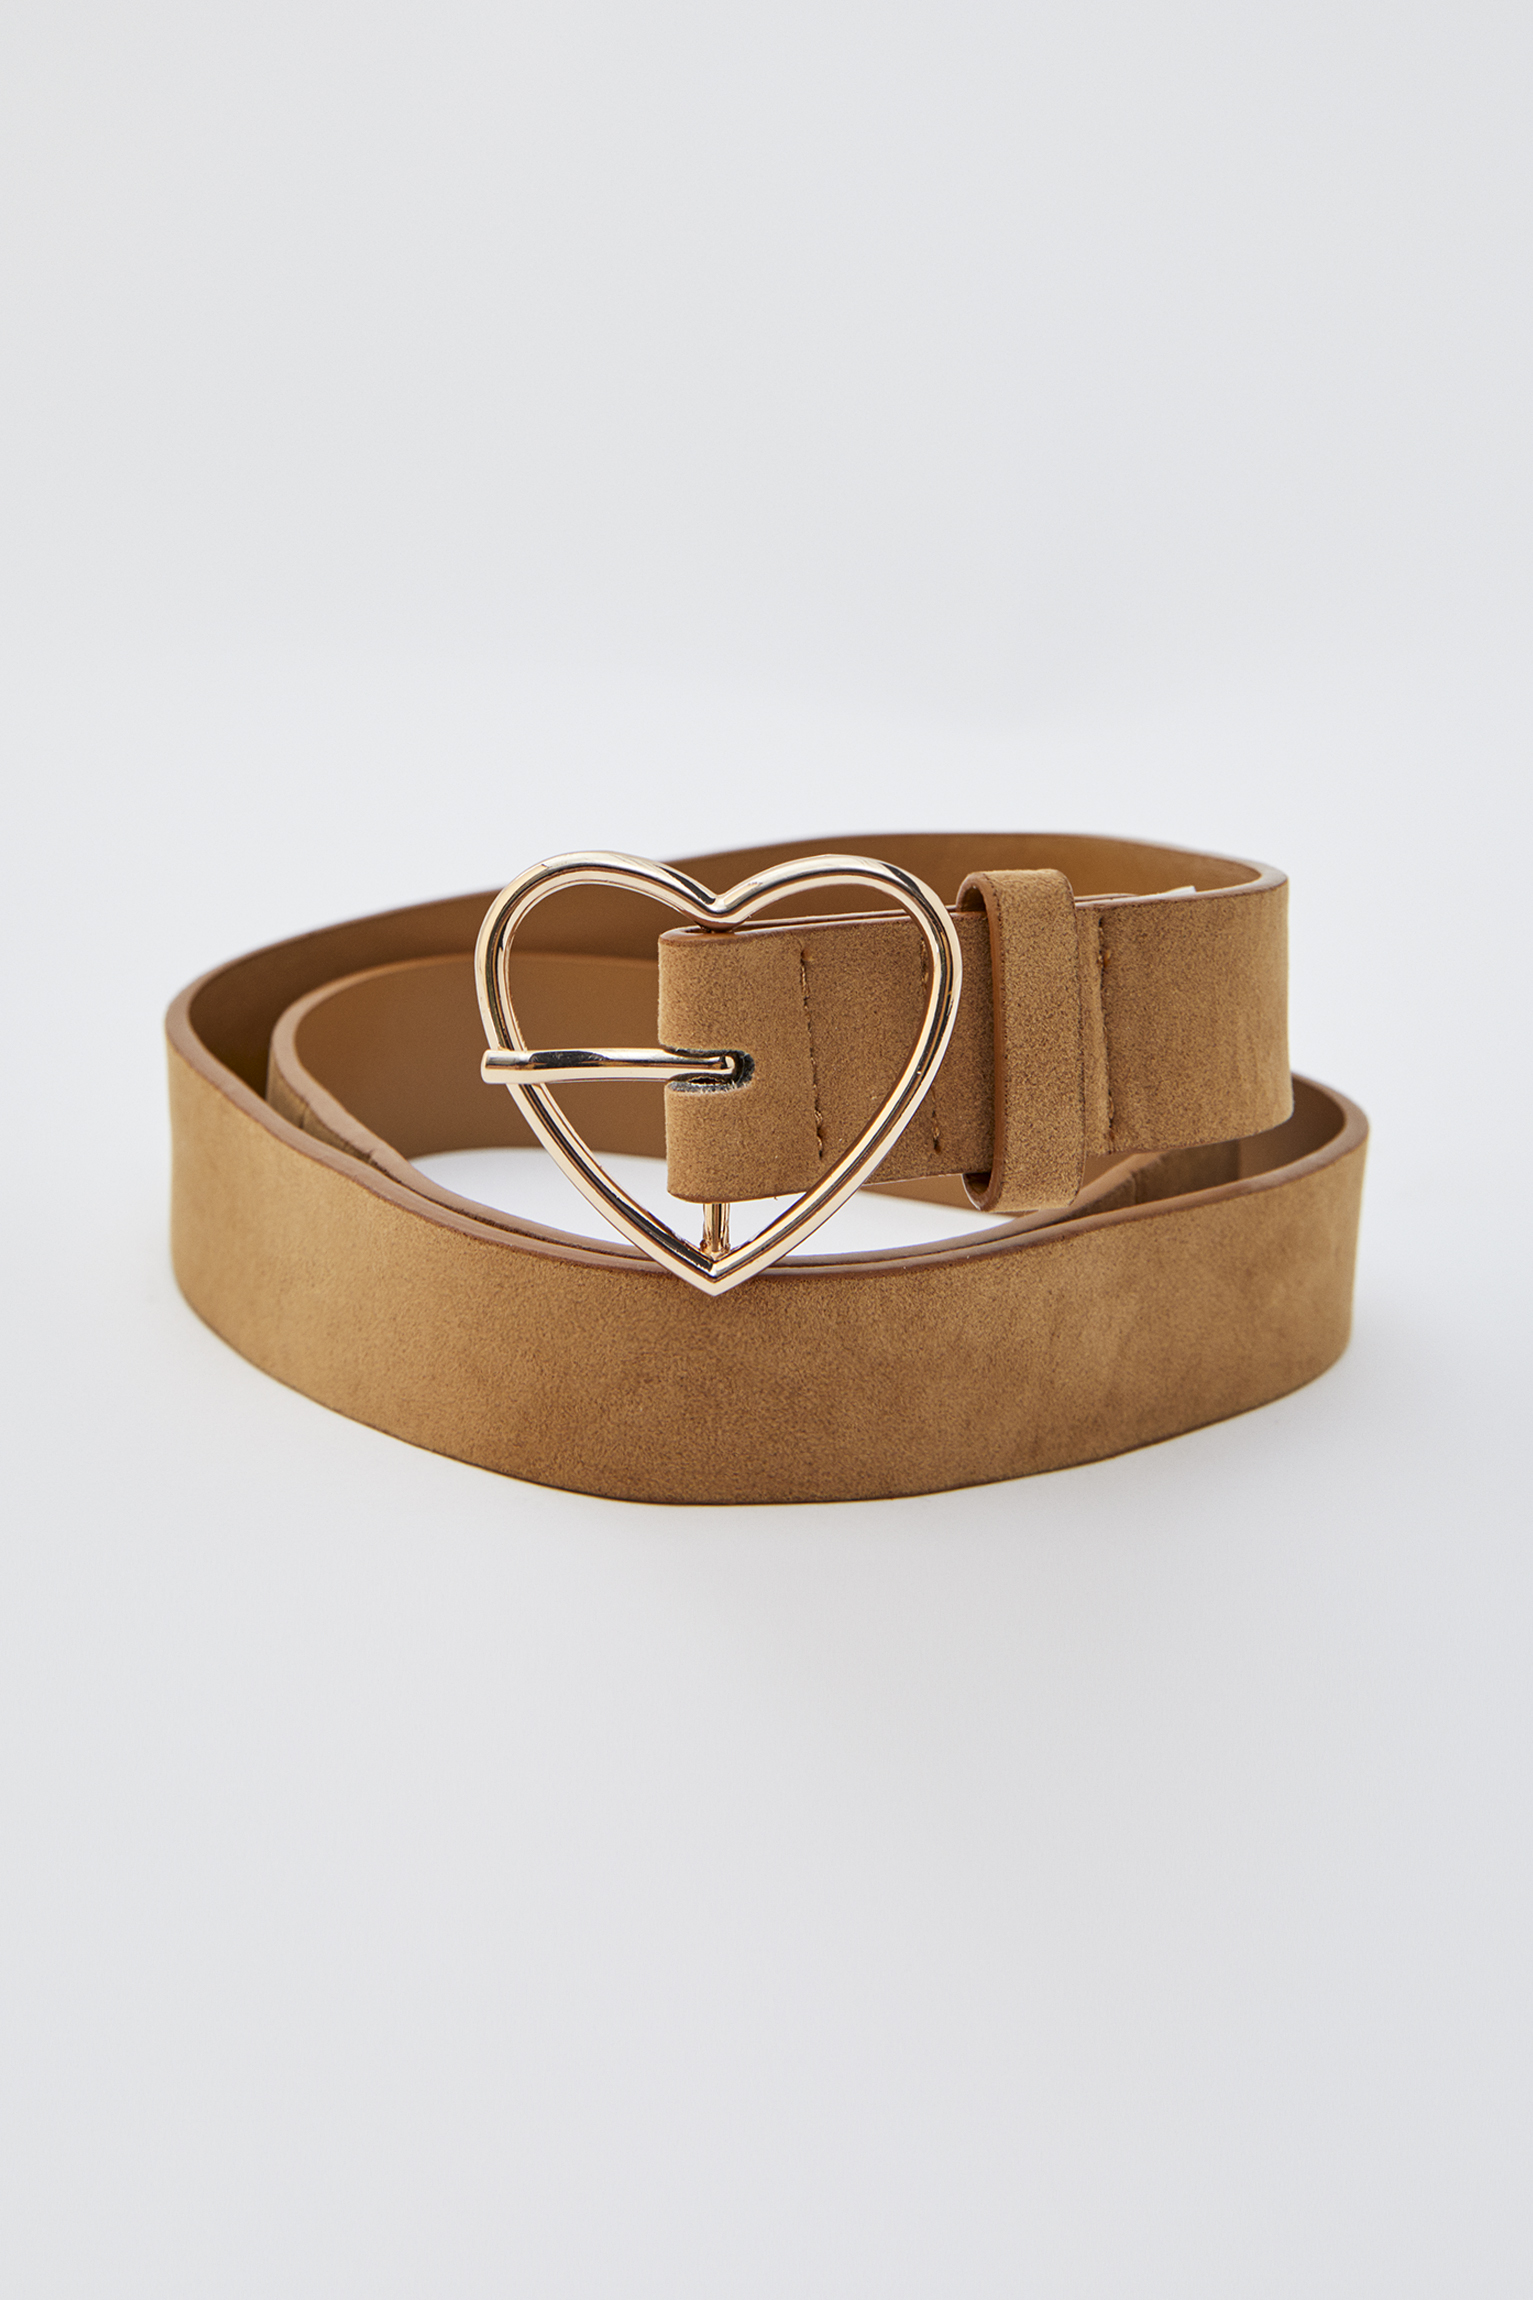 heart shaped belt buckle